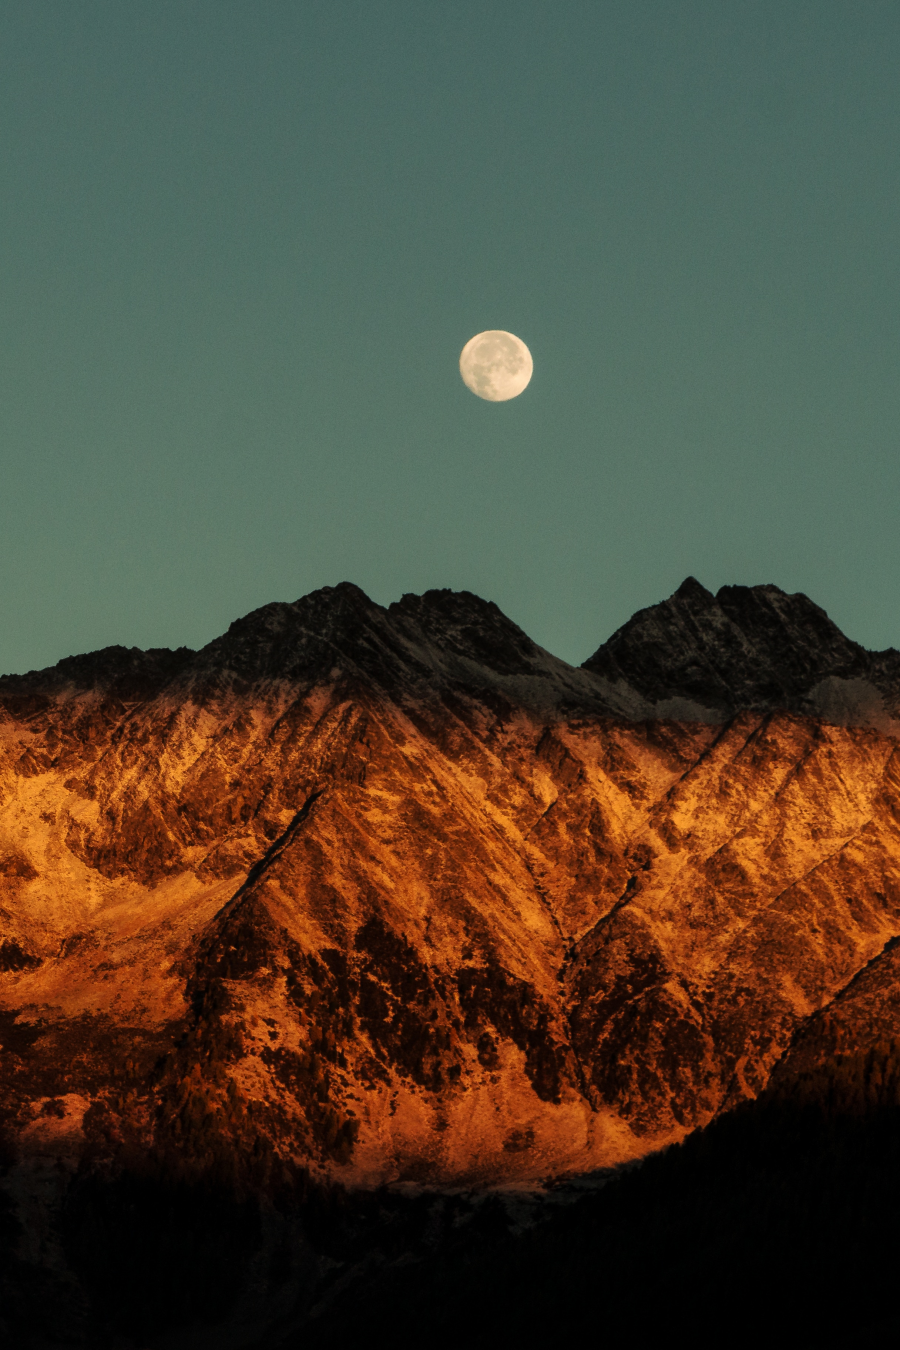 Cele mai frumoase ipostaze ale lunii, in poze superbe - Poza 11